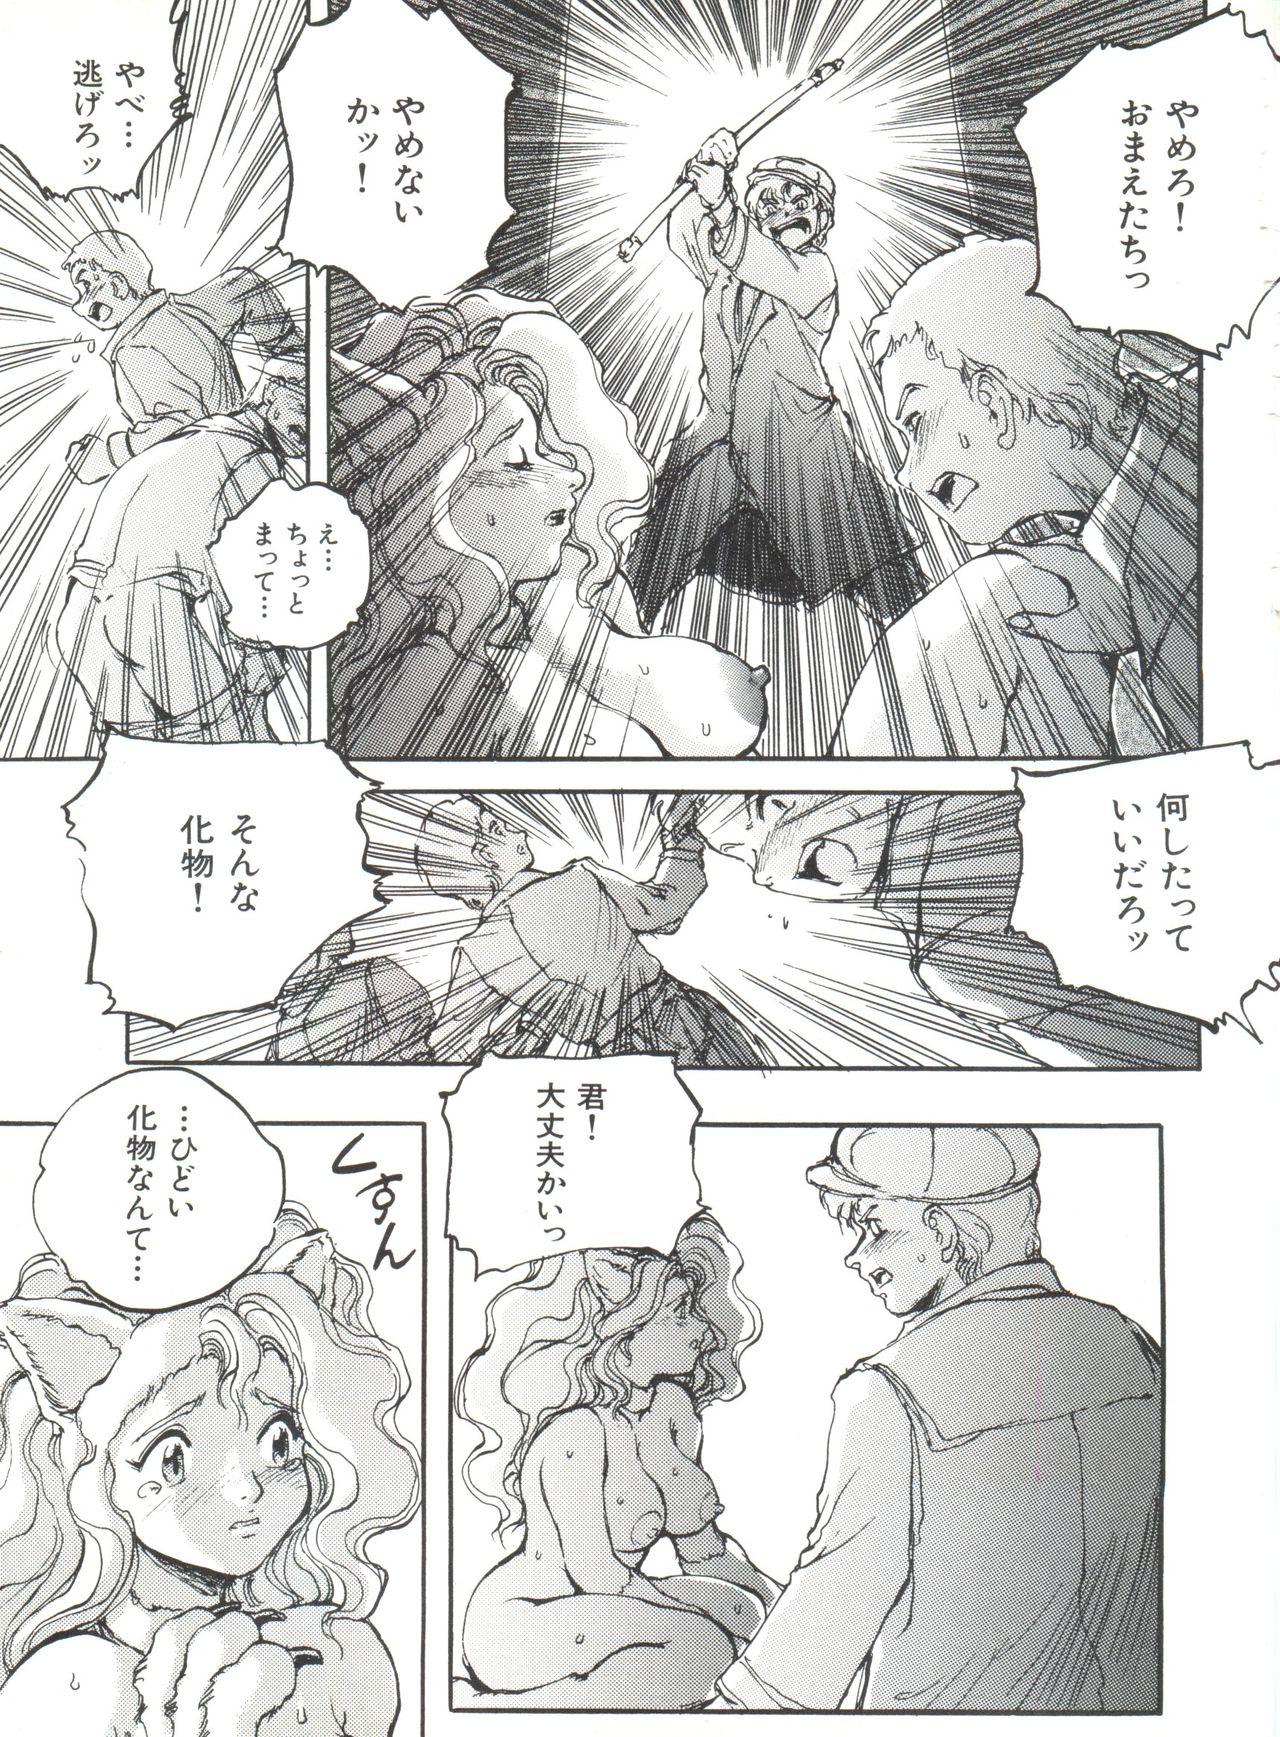 Bishoujo Doujinshi Anthology 19 38